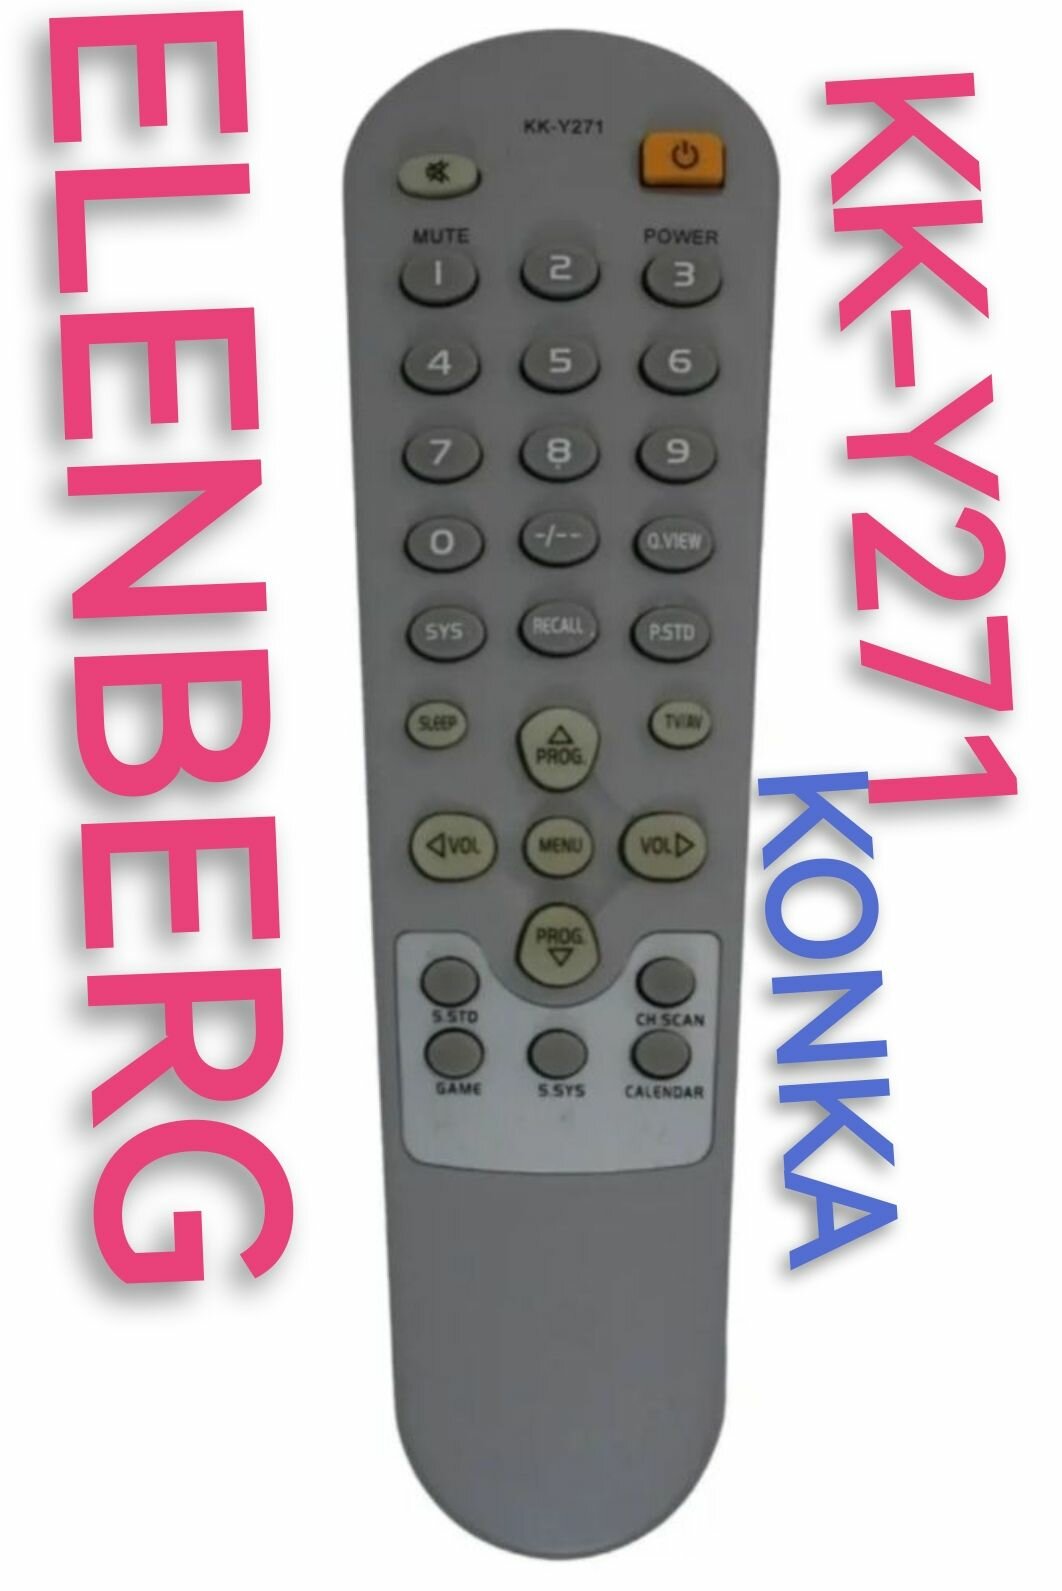 Пульт Huayu KK-Y271 для ELENBERG/эленберг и KONKA телевизоров